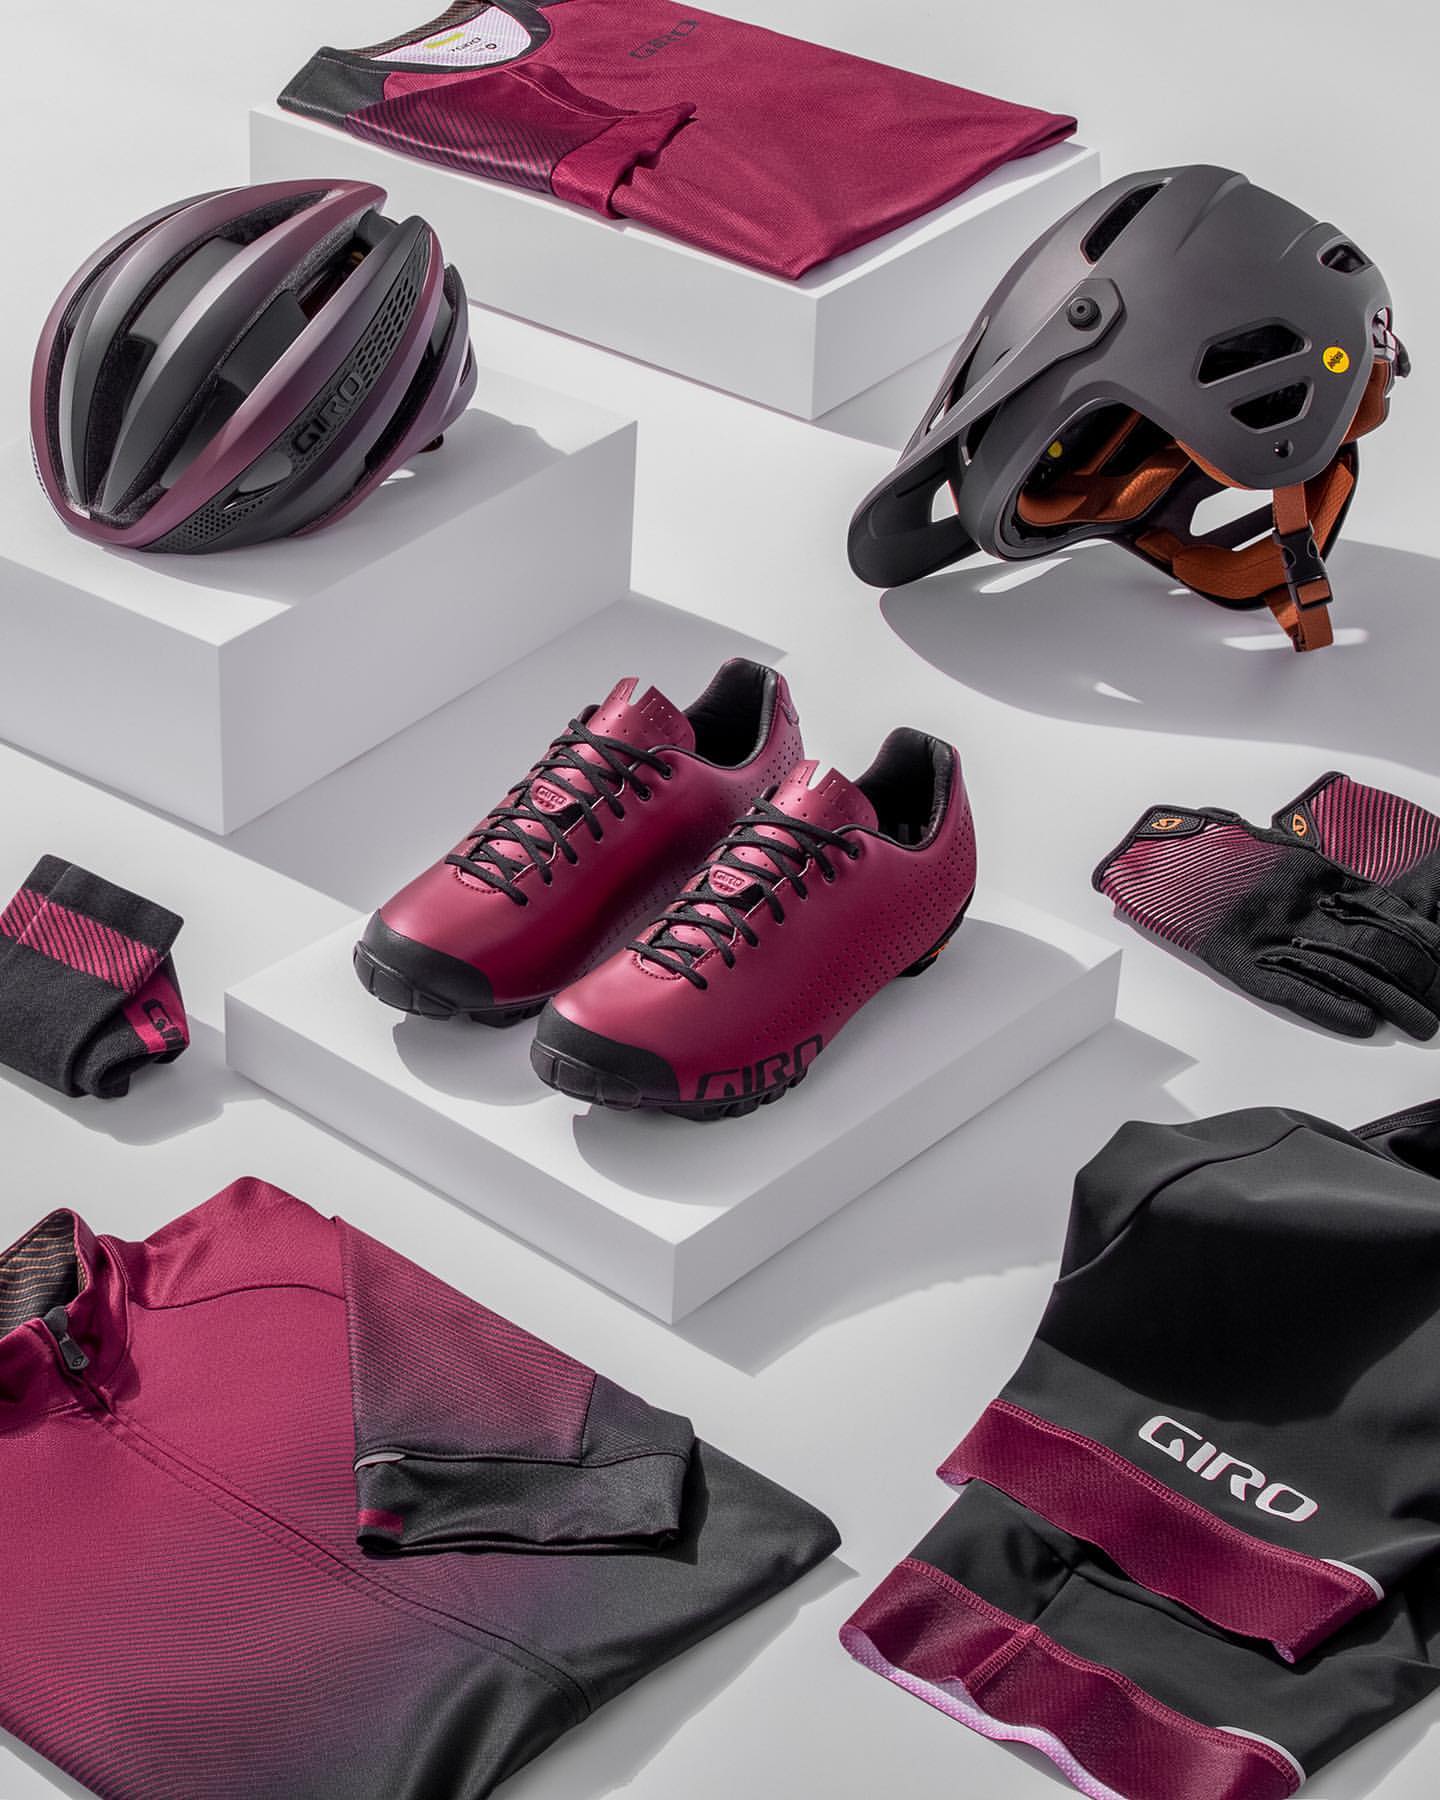 Giro представила лимитированную коллекцию велоодежды The Ox Blood Collection